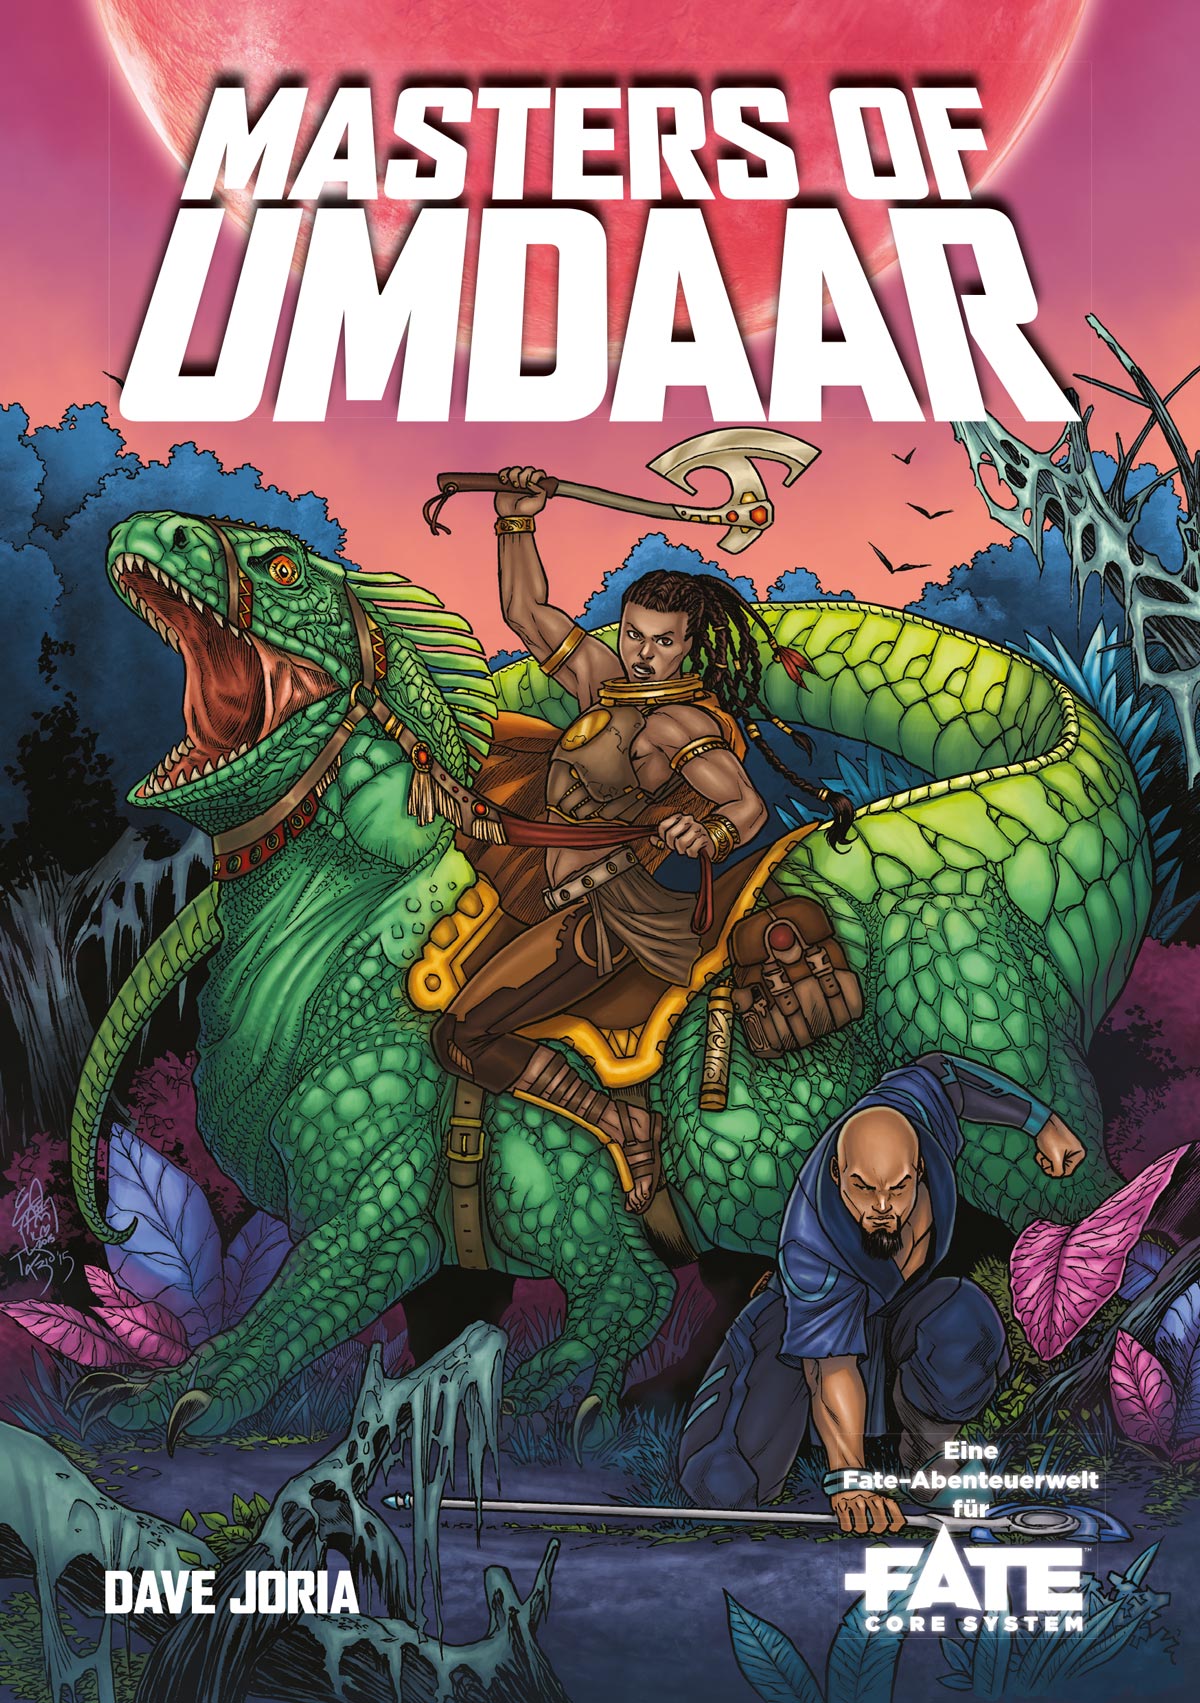 Masters of Umdaar preview